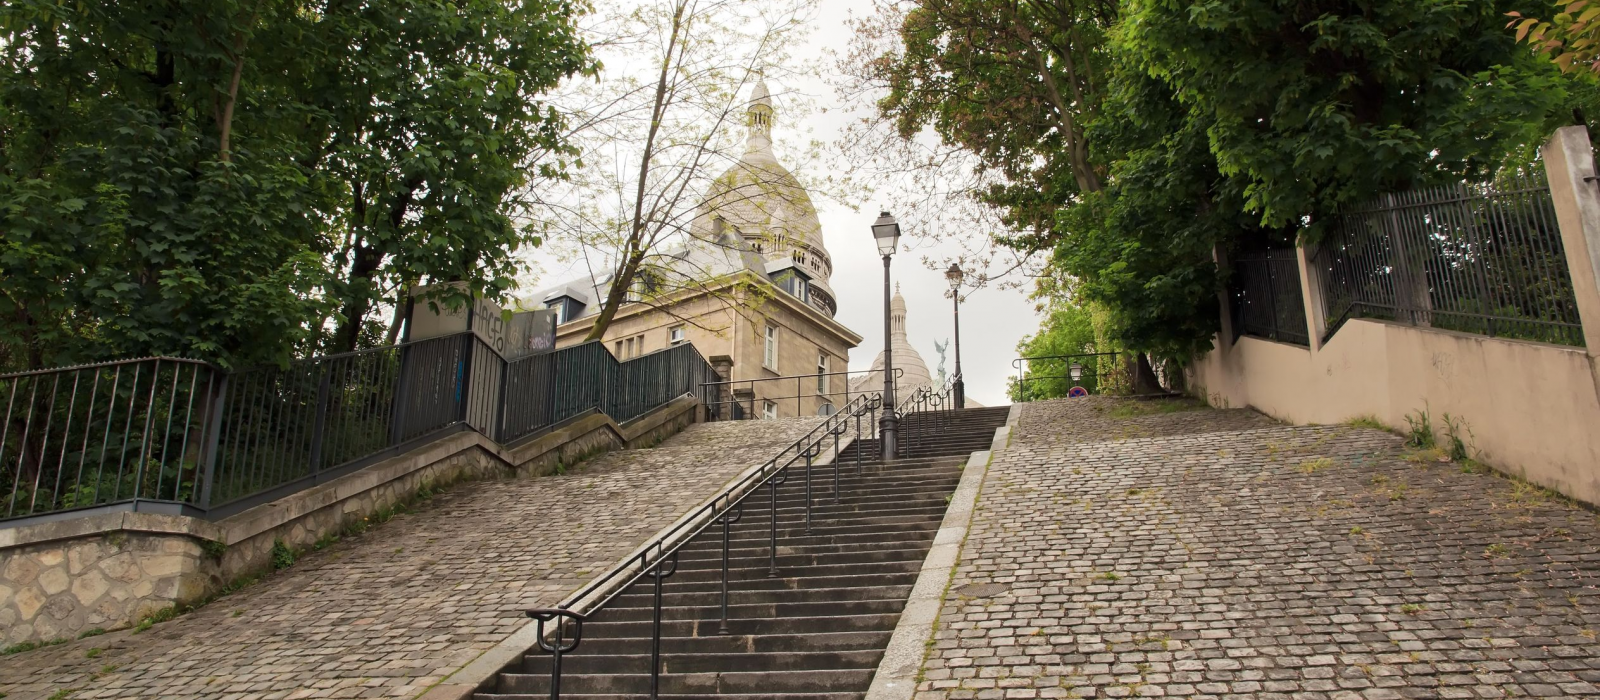 Les plus beaux escaliers de France